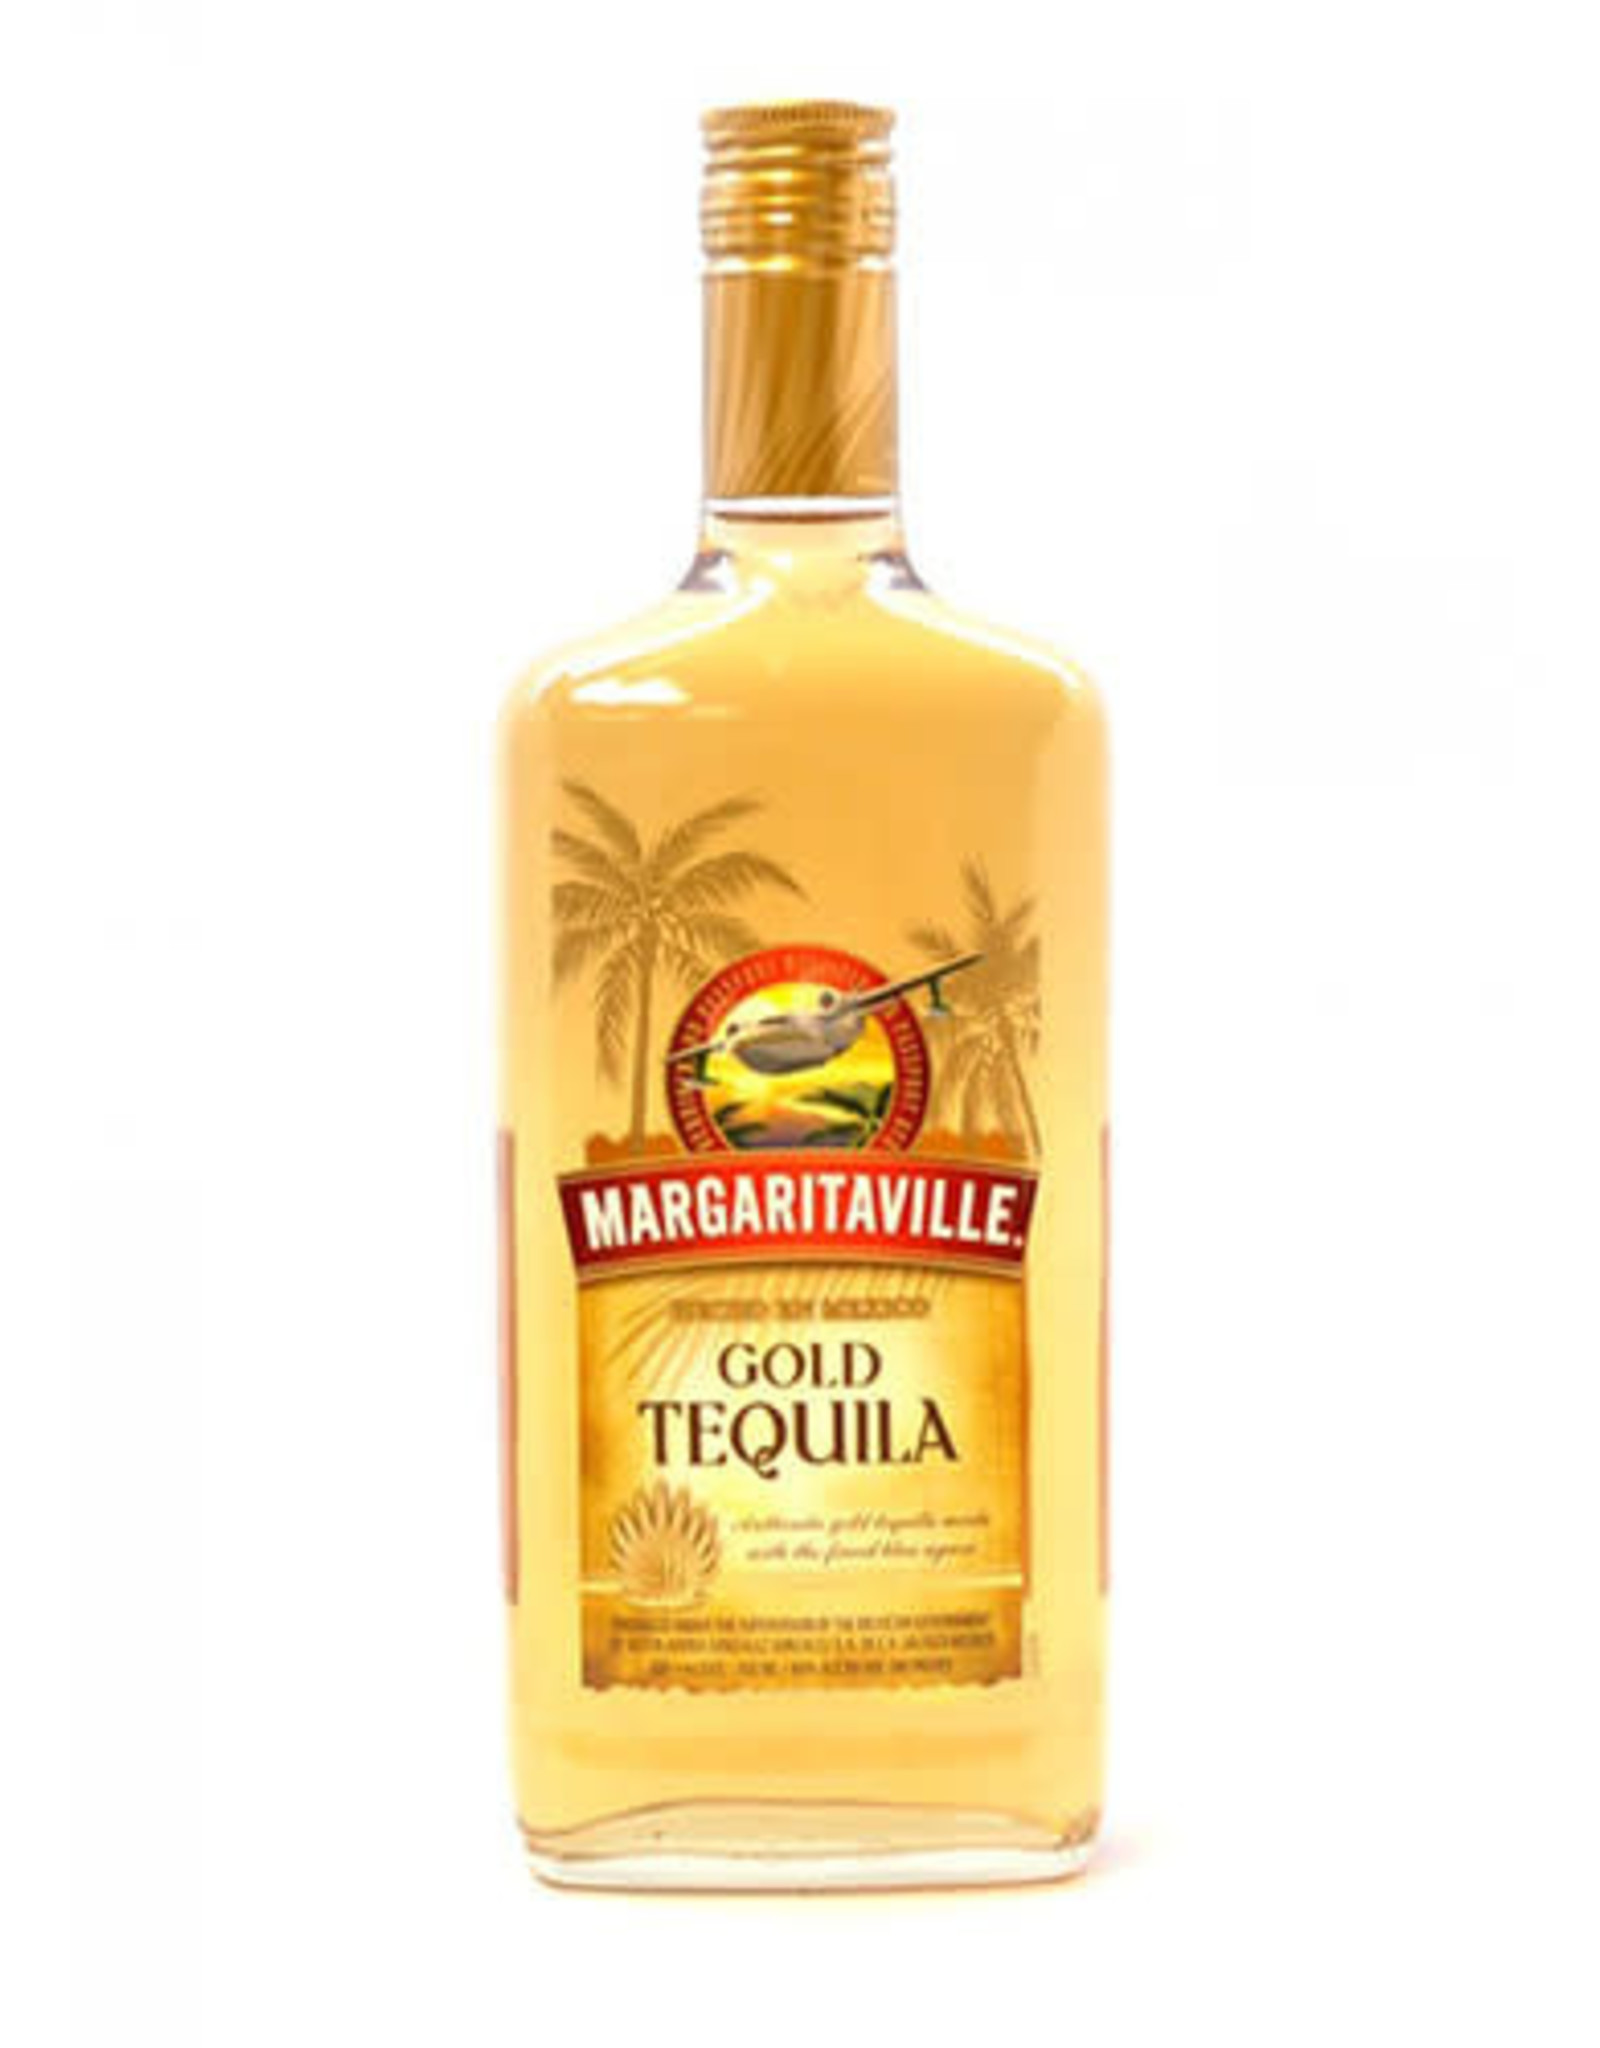 Margaritaville MARGARITAVILLE GOLD TEQUILA 80 PR. 750 ML